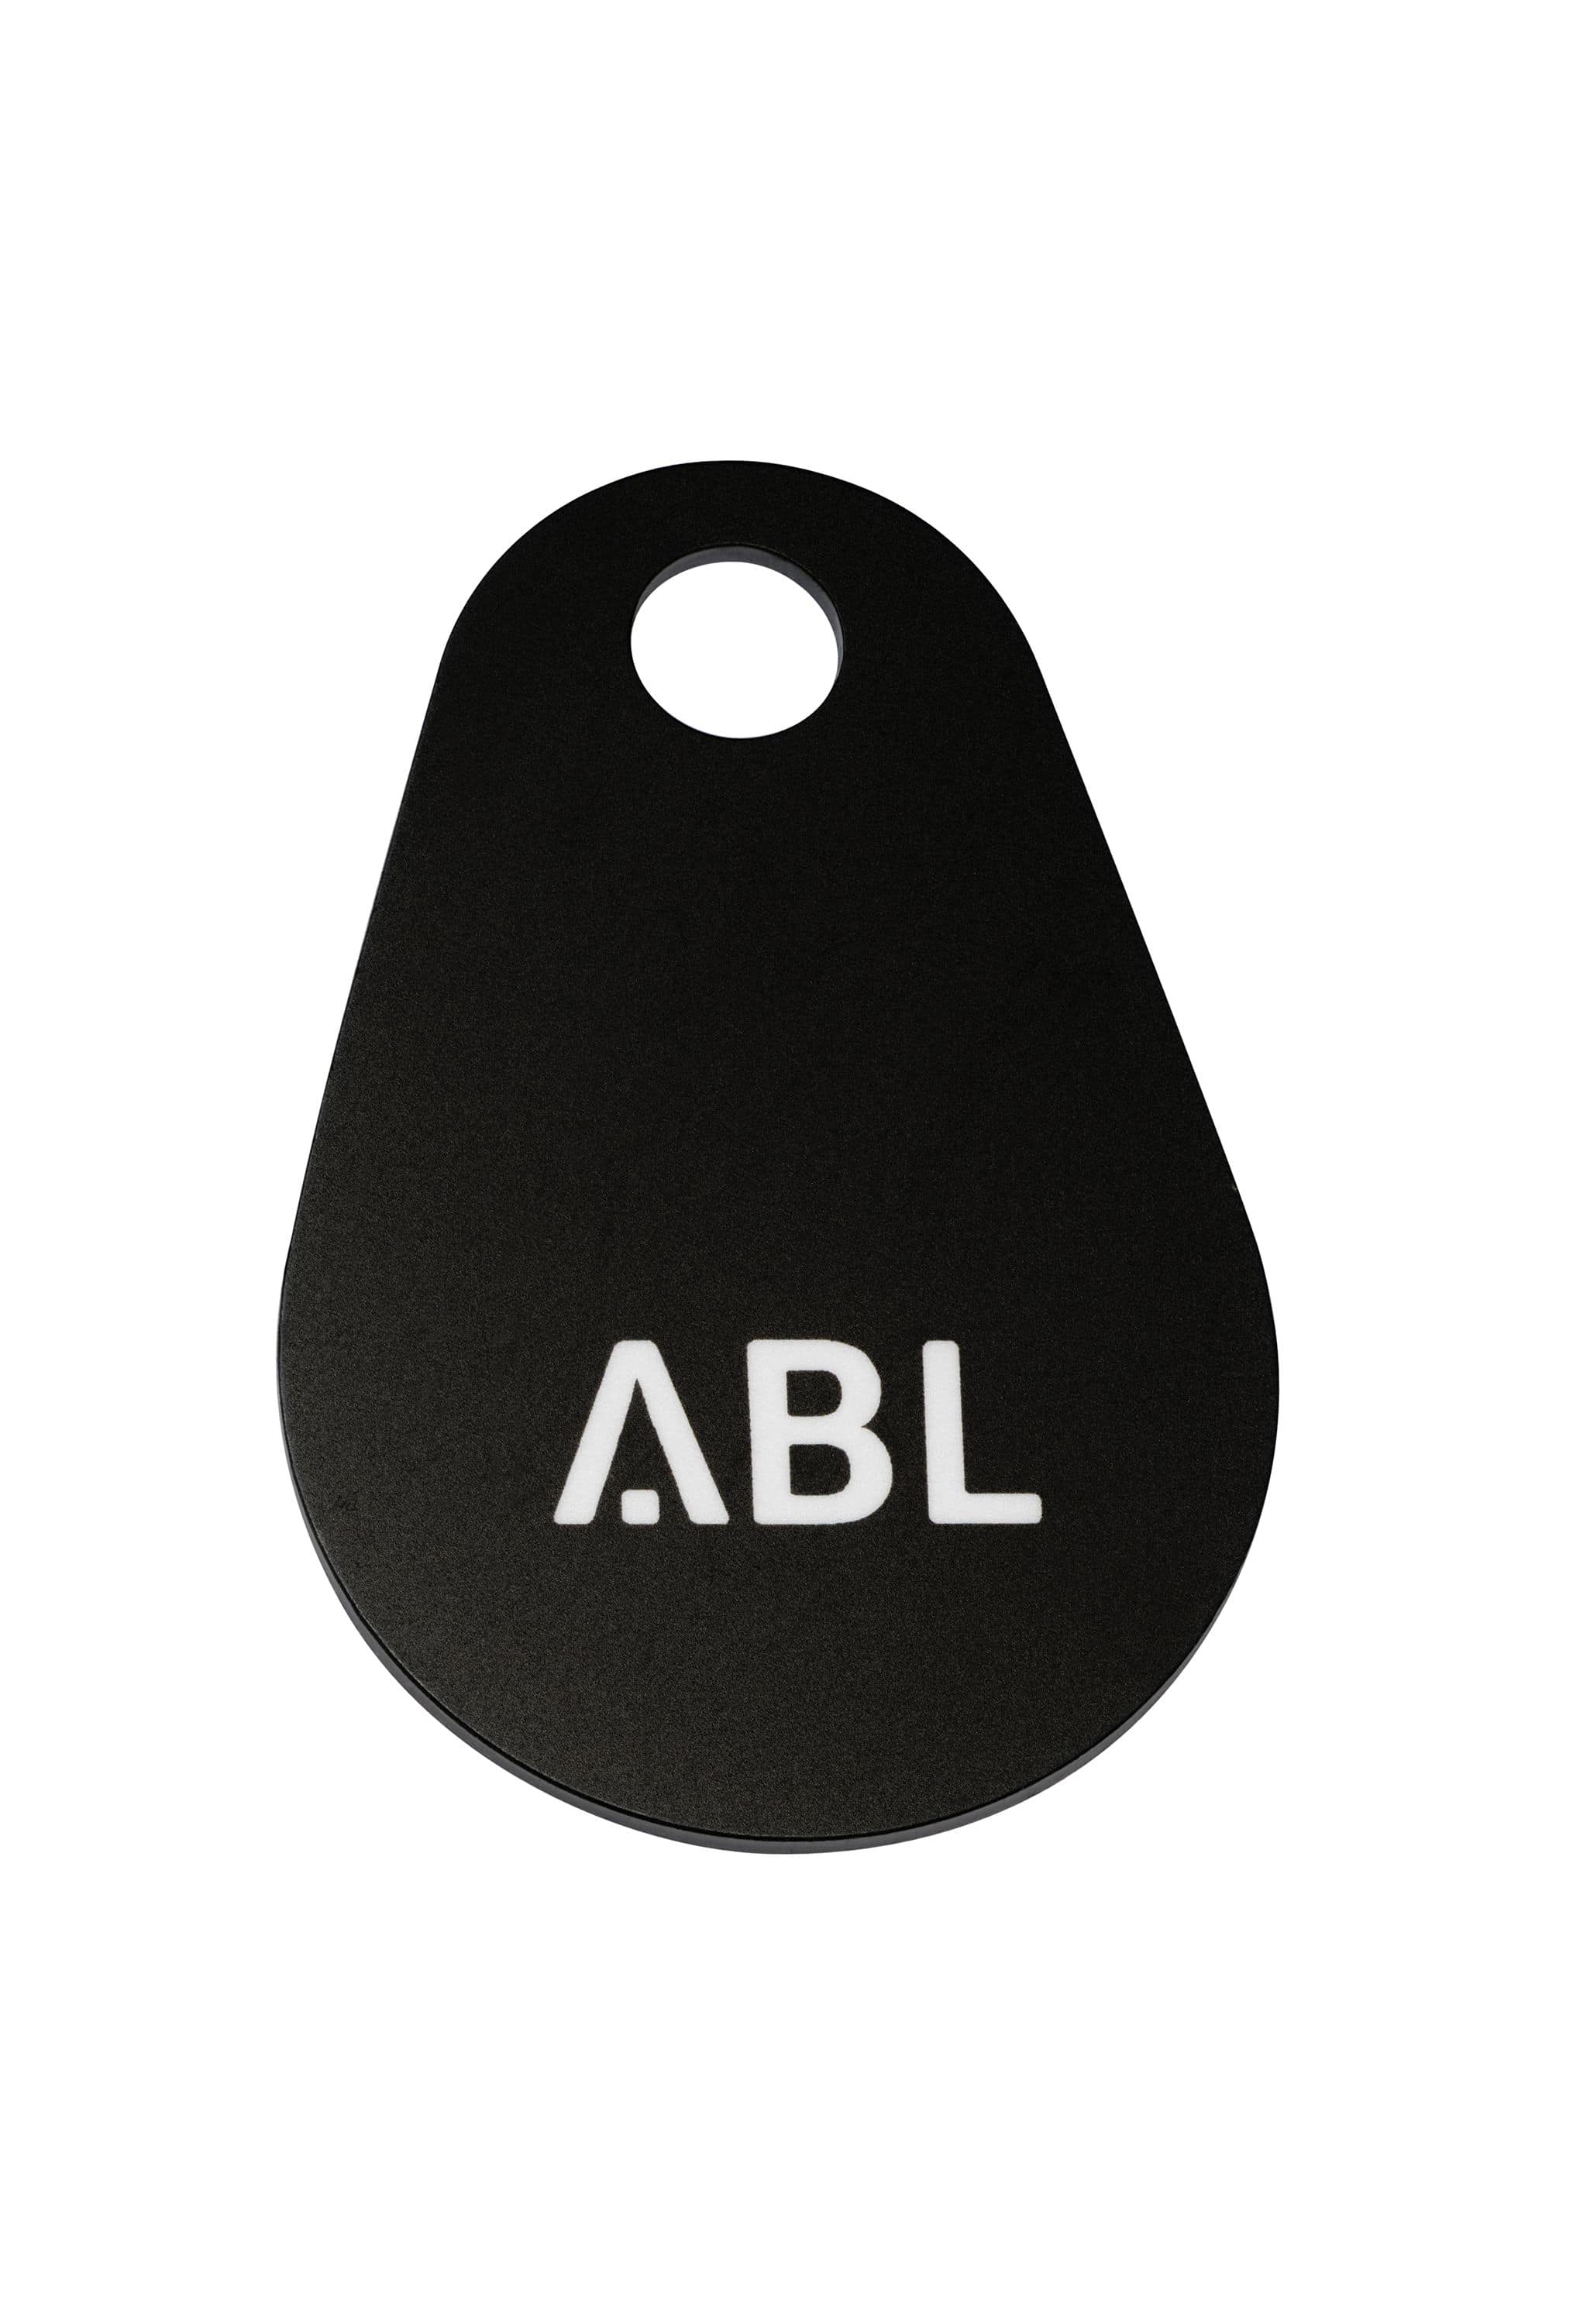 ABL 100000253 RFID-Keyfob für alle ABL Ladestationen mit RFID-Reader, schwarz, ISO/IEC 14443 Typ A